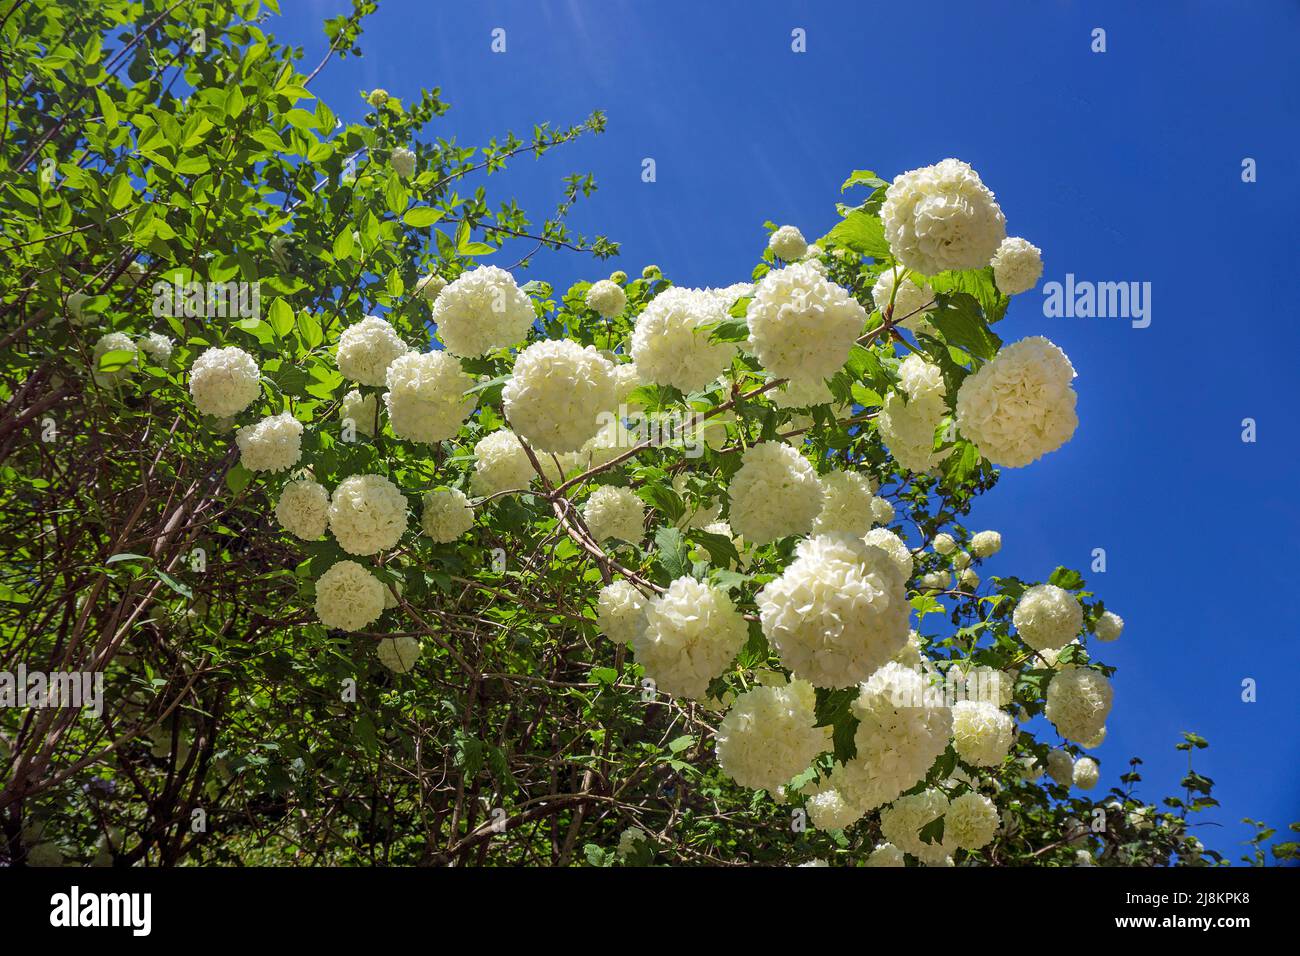 Boules de neige réelles (Viburnum opulus), variété Roseum, floraison, Bourscheid, district de Diekirch, Ardennes, Luxembourg, Europe Banque D'Images